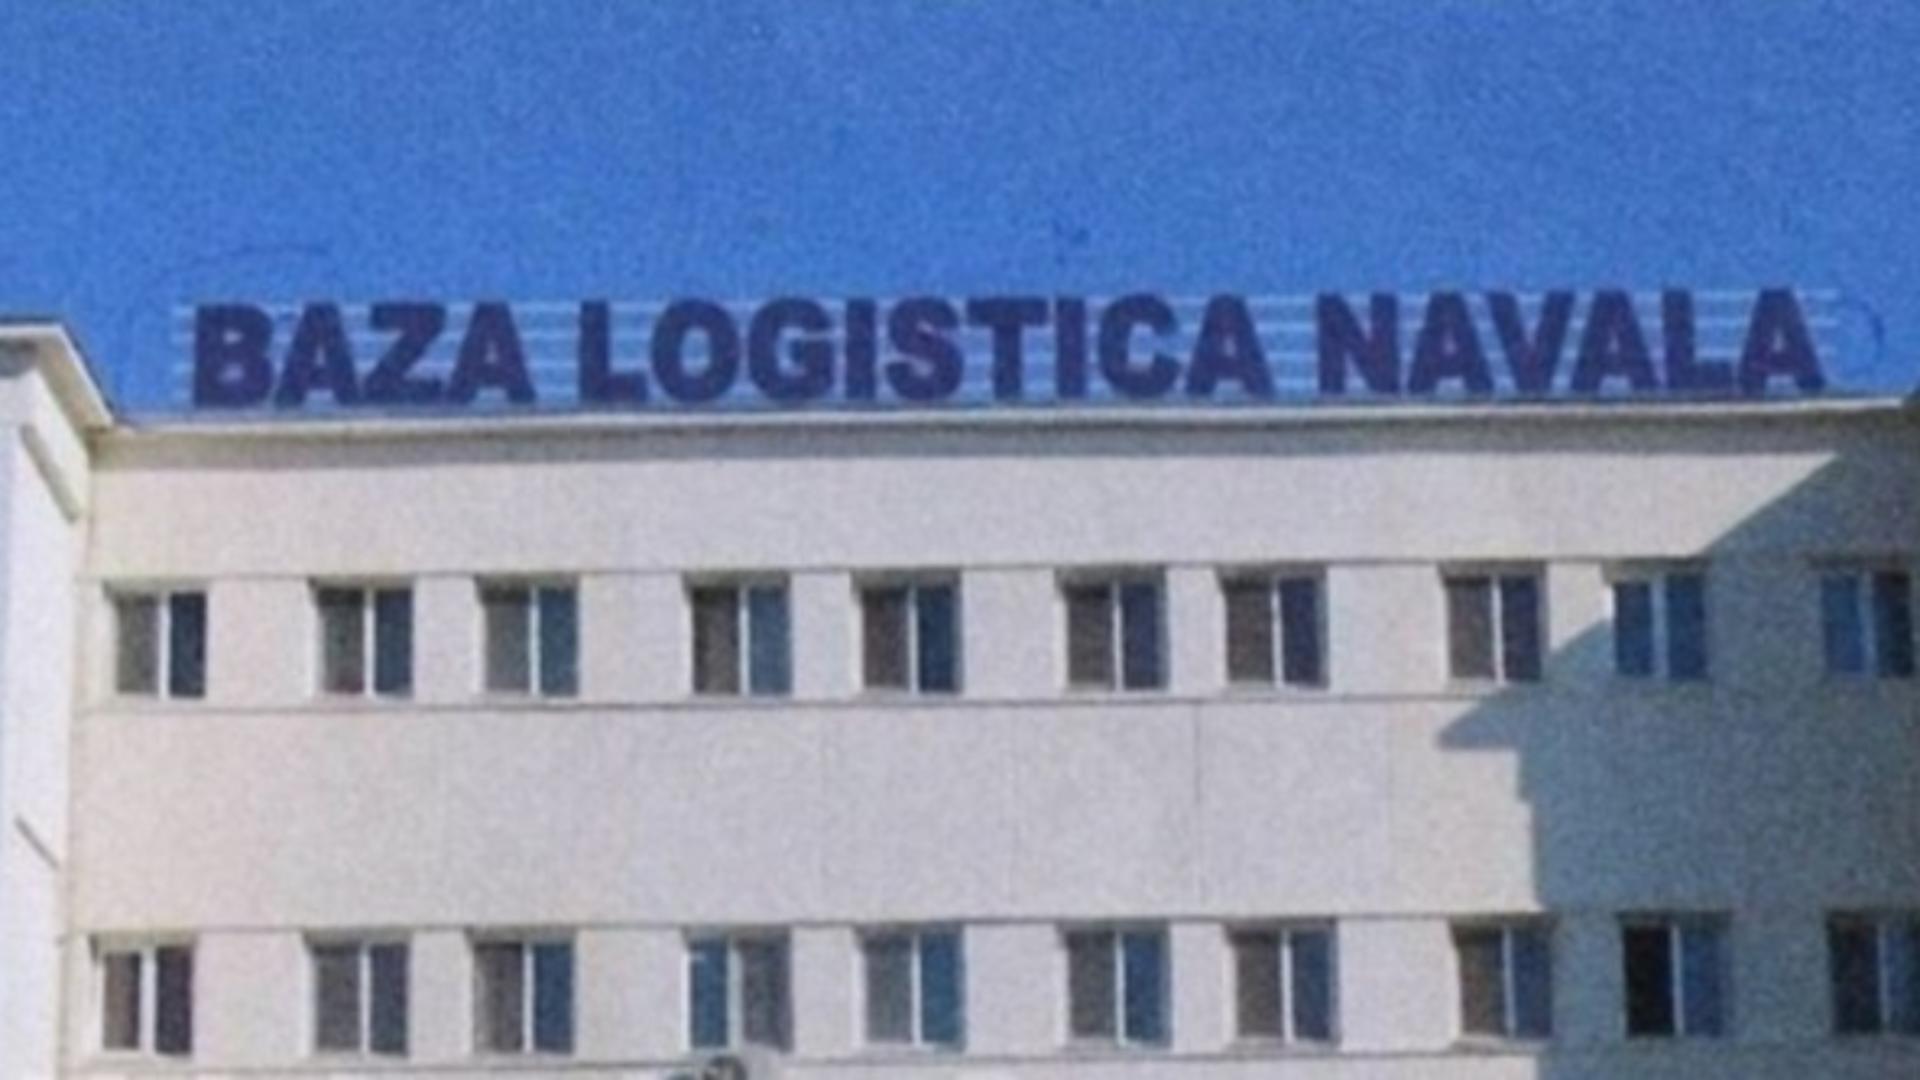 Baza Logistica Navala baga 2 milioane de lei in conturile unui SRL din Buzau abonat la contracte cu statul